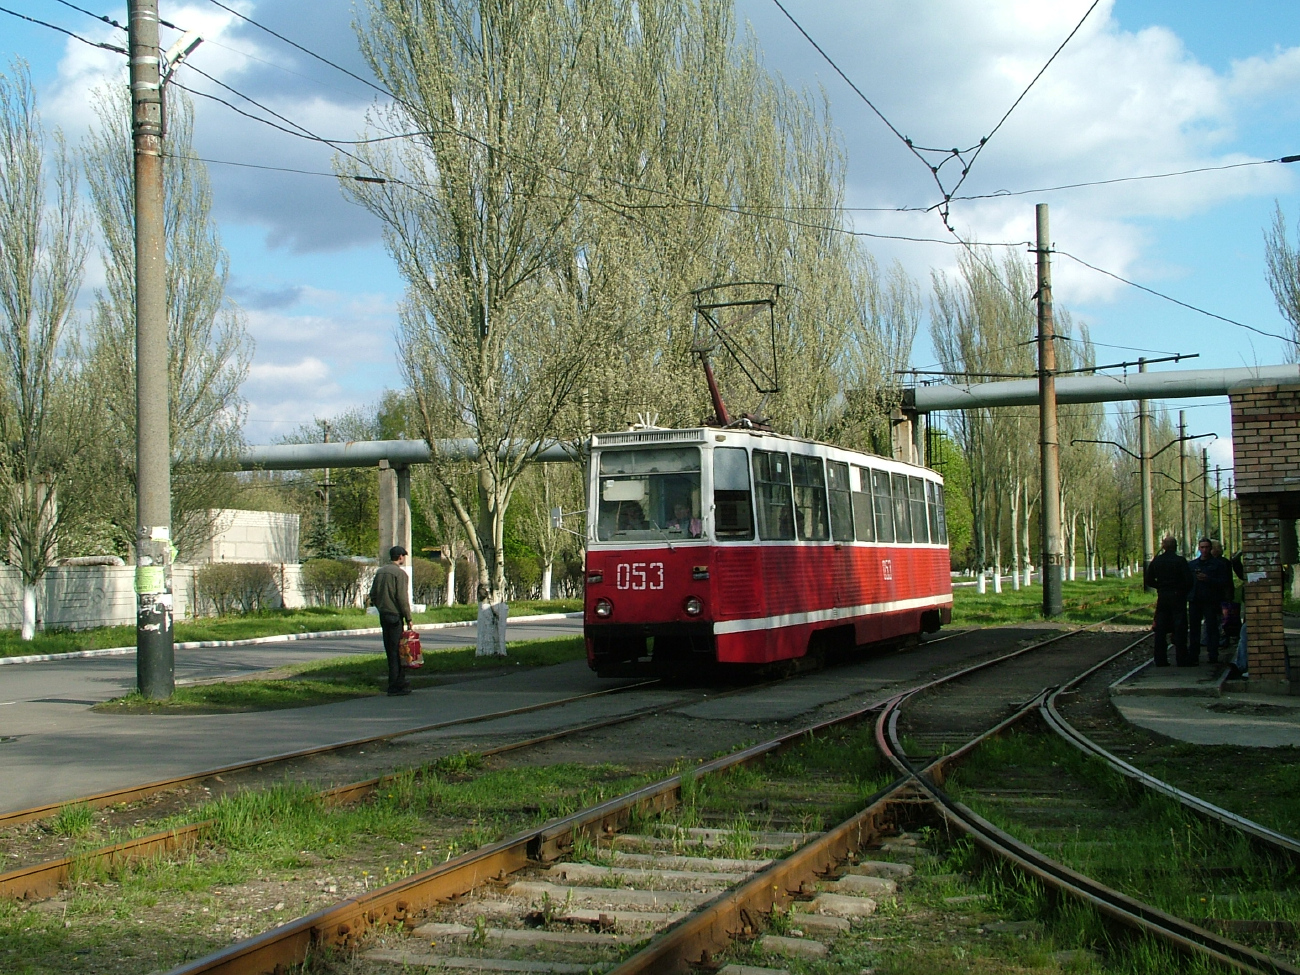 Avgyejevka, 71-605 (KTM-5M3) — 053; Avgyejevka — Lines and Infrastructure